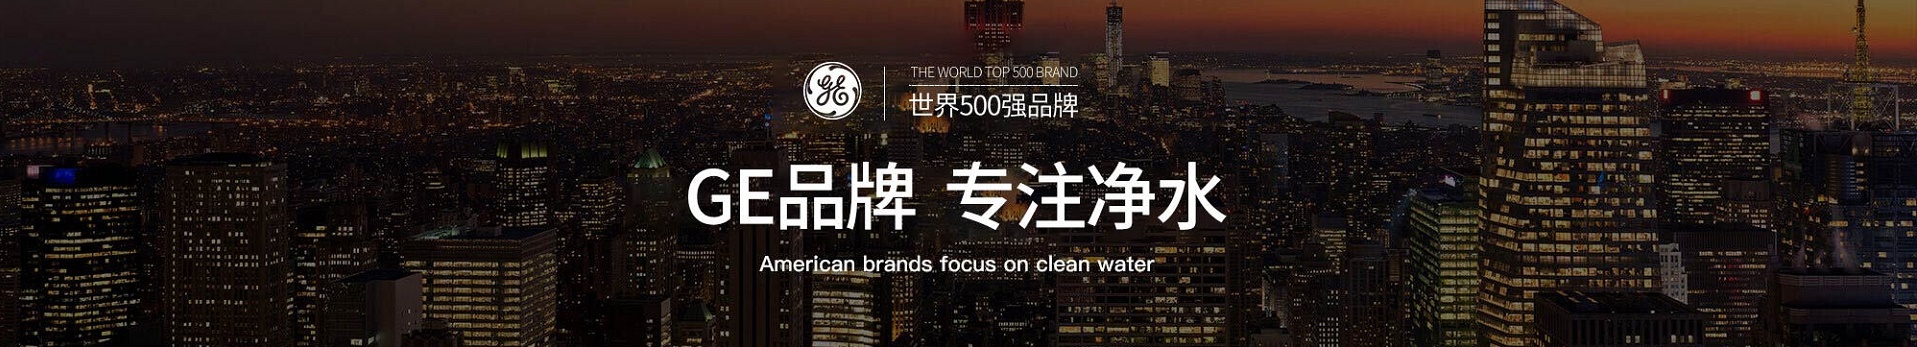 茵吉莱INGENIEU，世界第一高端净水器品牌